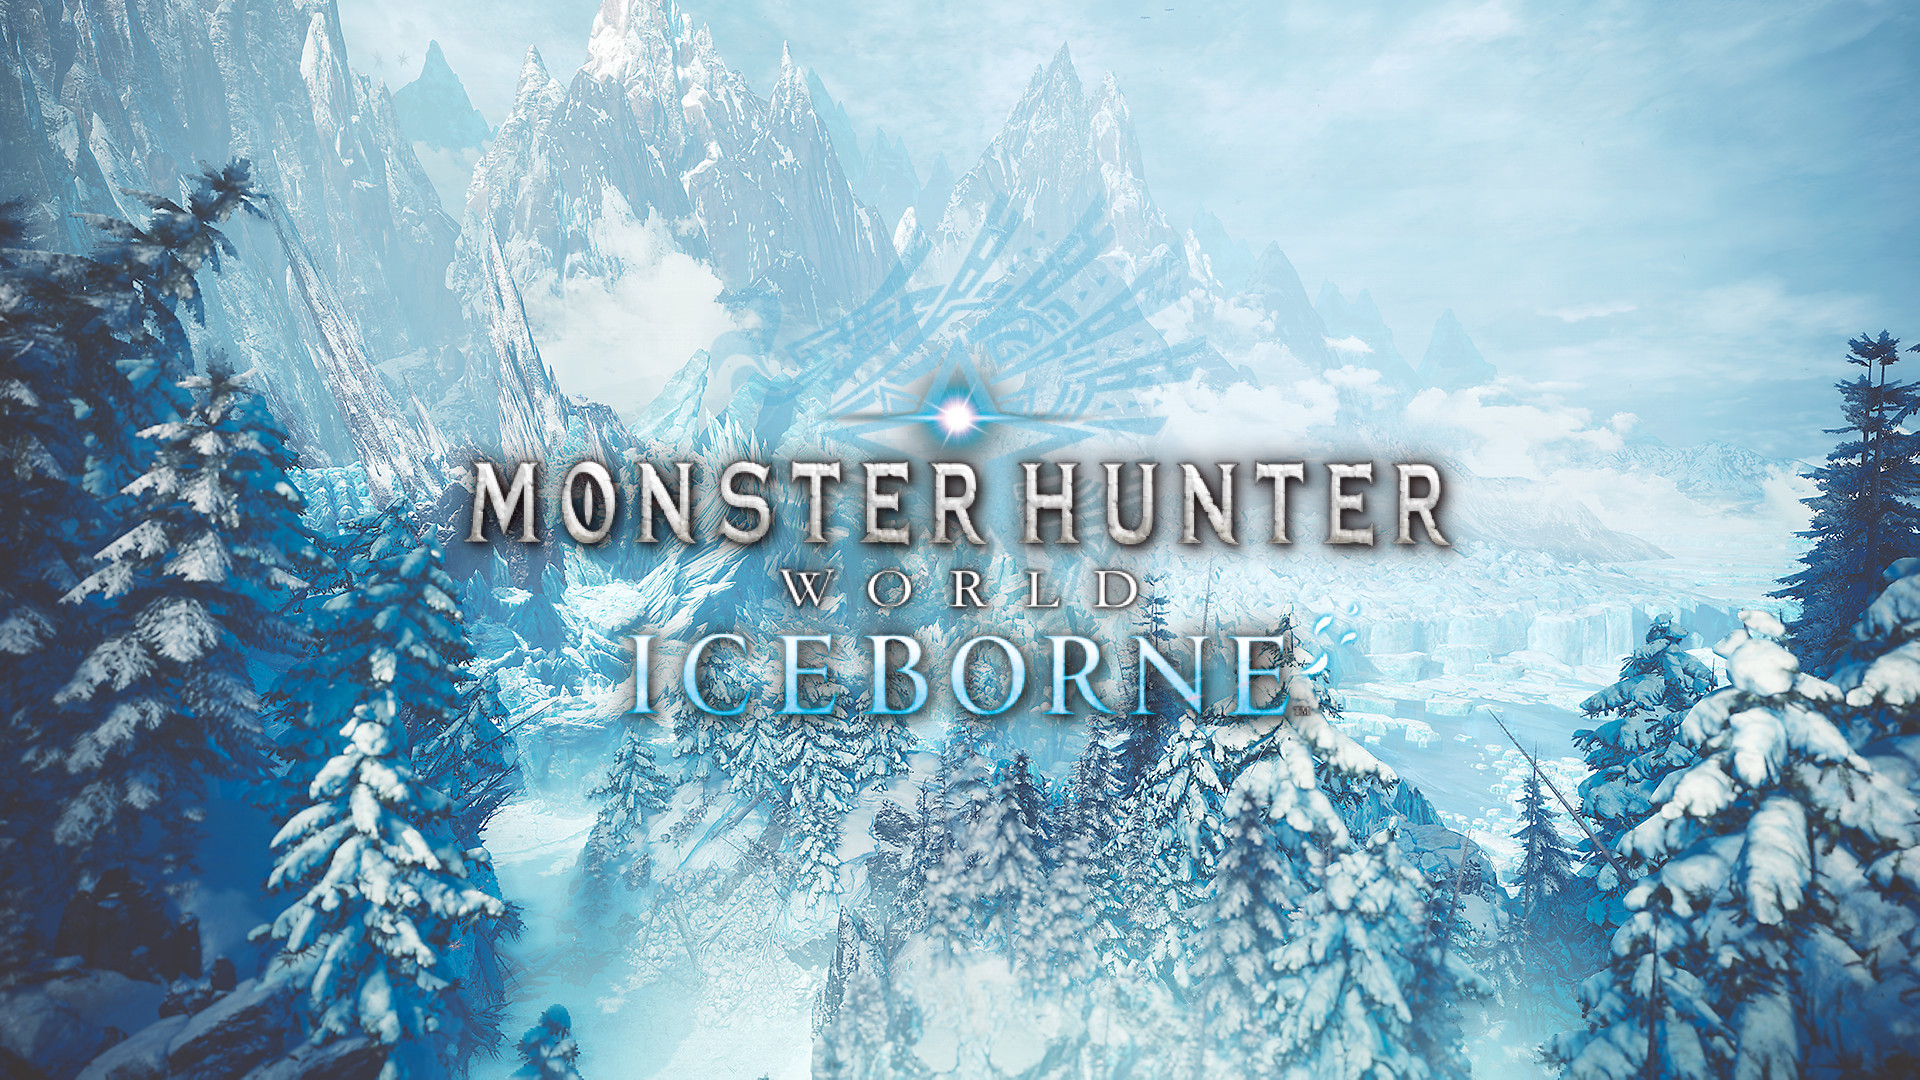 monster hunter world iceborne